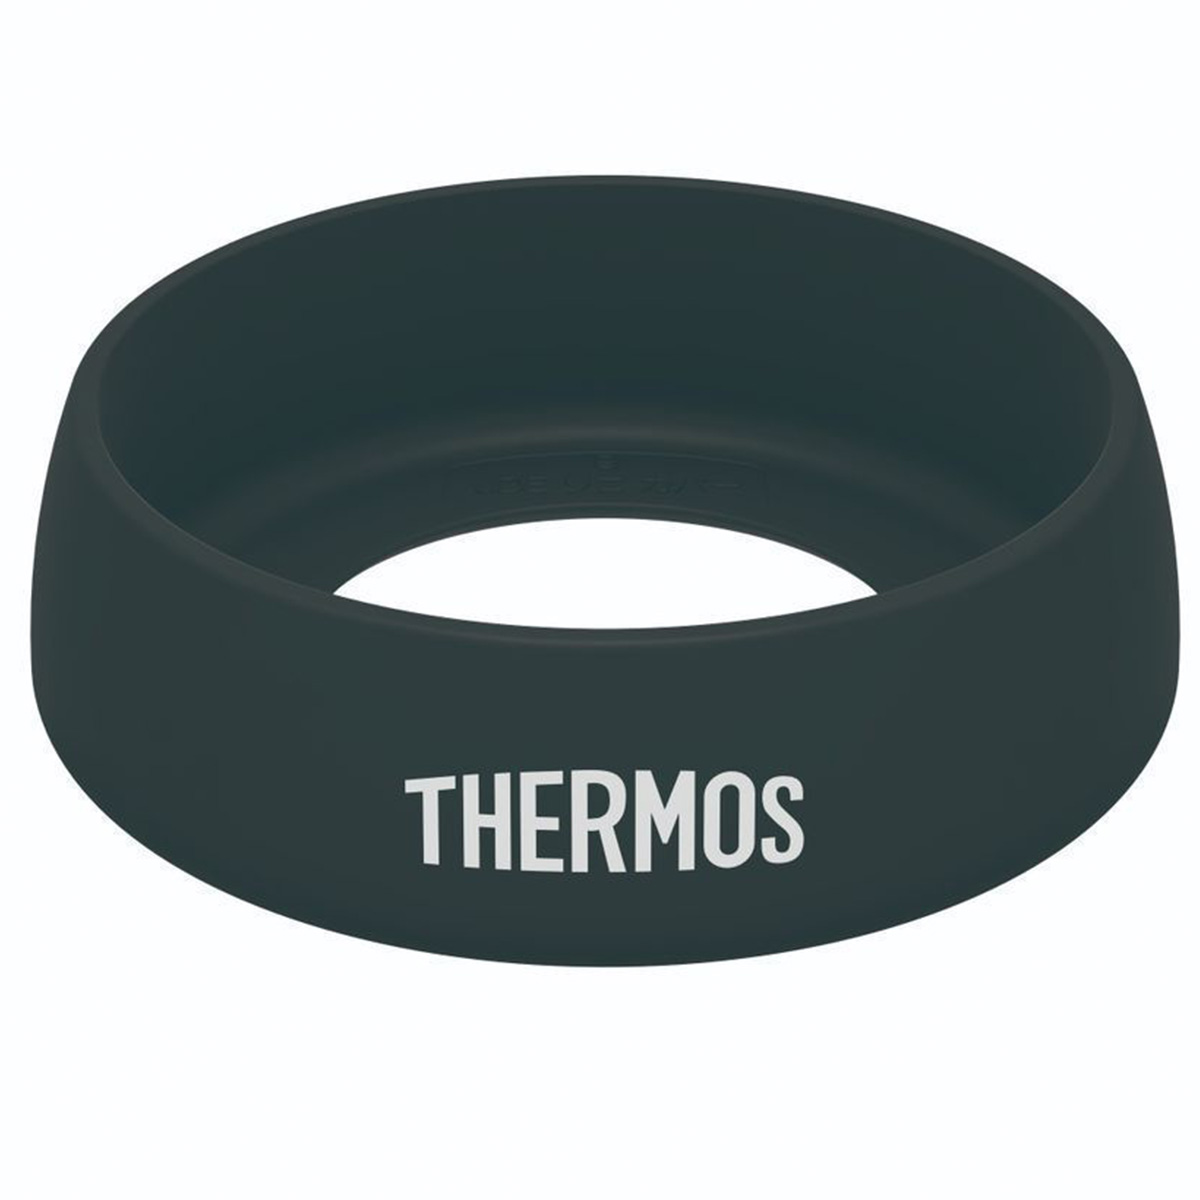 THERMOS タンブラー用ソコカバー 600ml対応 ブラック